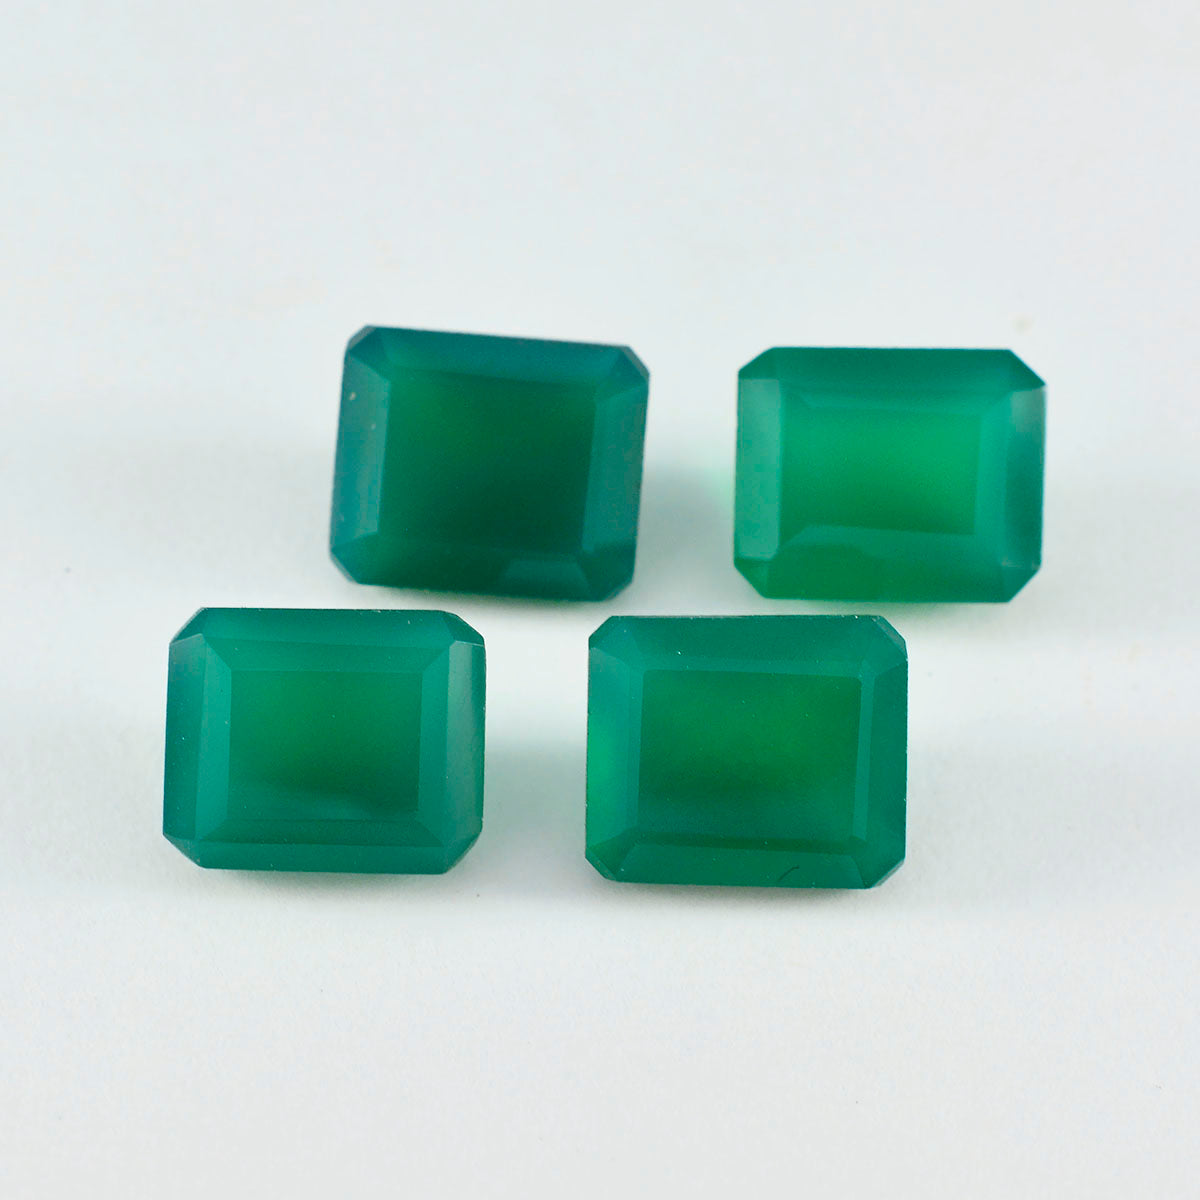 Riyogems 1 pièce véritable onyx vert à facettes 8x10mm forme octogonale a + pierres précieuses de qualité